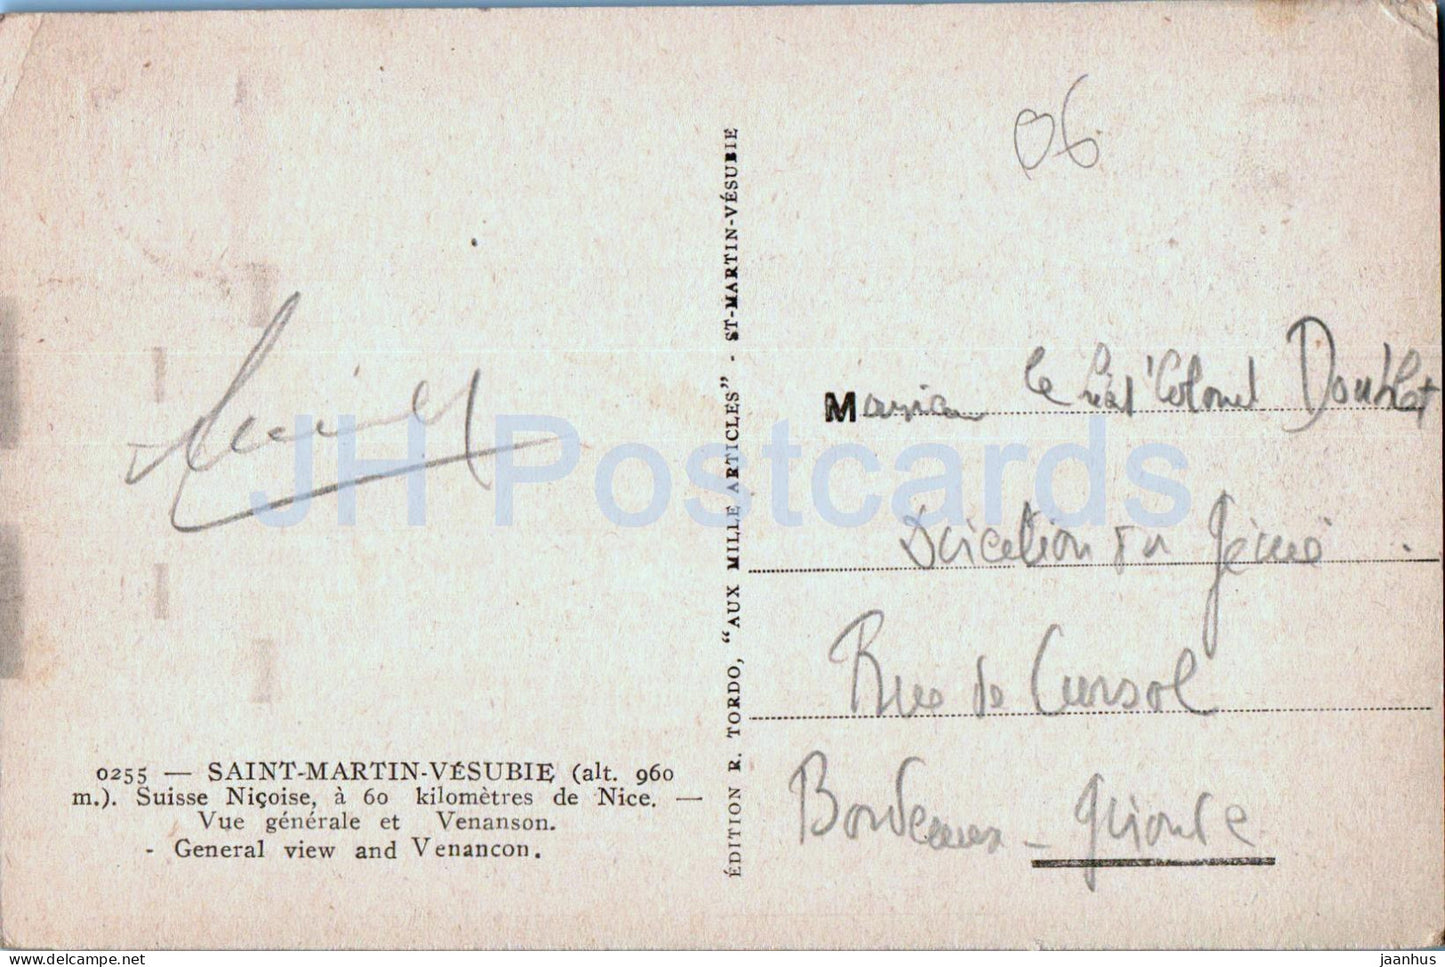 Saint Martin Vesubie - Vue Generale et Venanson - 0255 - alte Postkarte - Frankreich - gebraucht